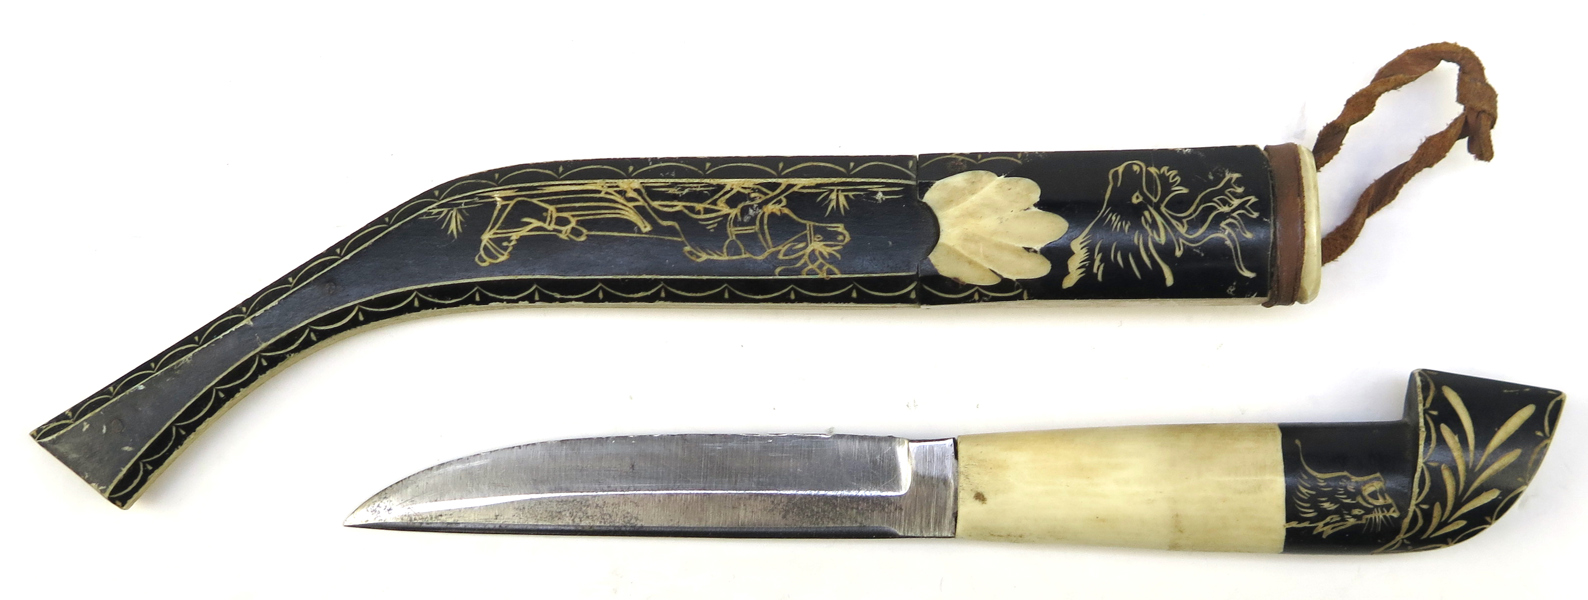 Kniv i balja, helhorn, samearbete, 1900-talets mitt, dekor av same i akkja mm, total l 27 cm_37071a_8dc3d0dfa22006e_lg.jpeg